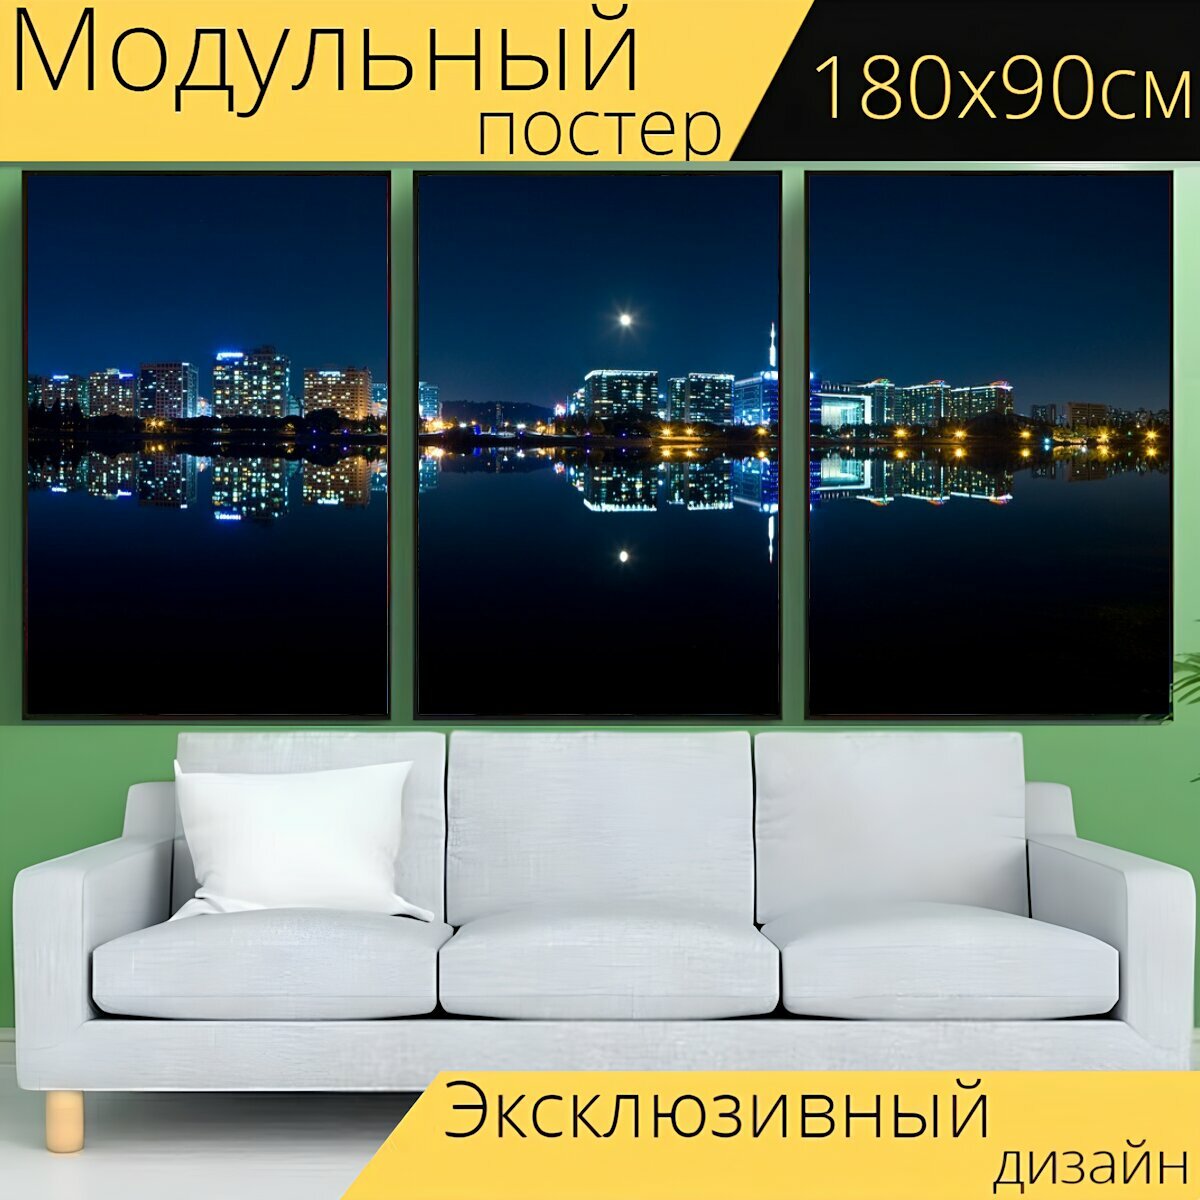 Модульный постер "Ночная точка зрения, город, панорама" 180 x 90 см. для интерьера